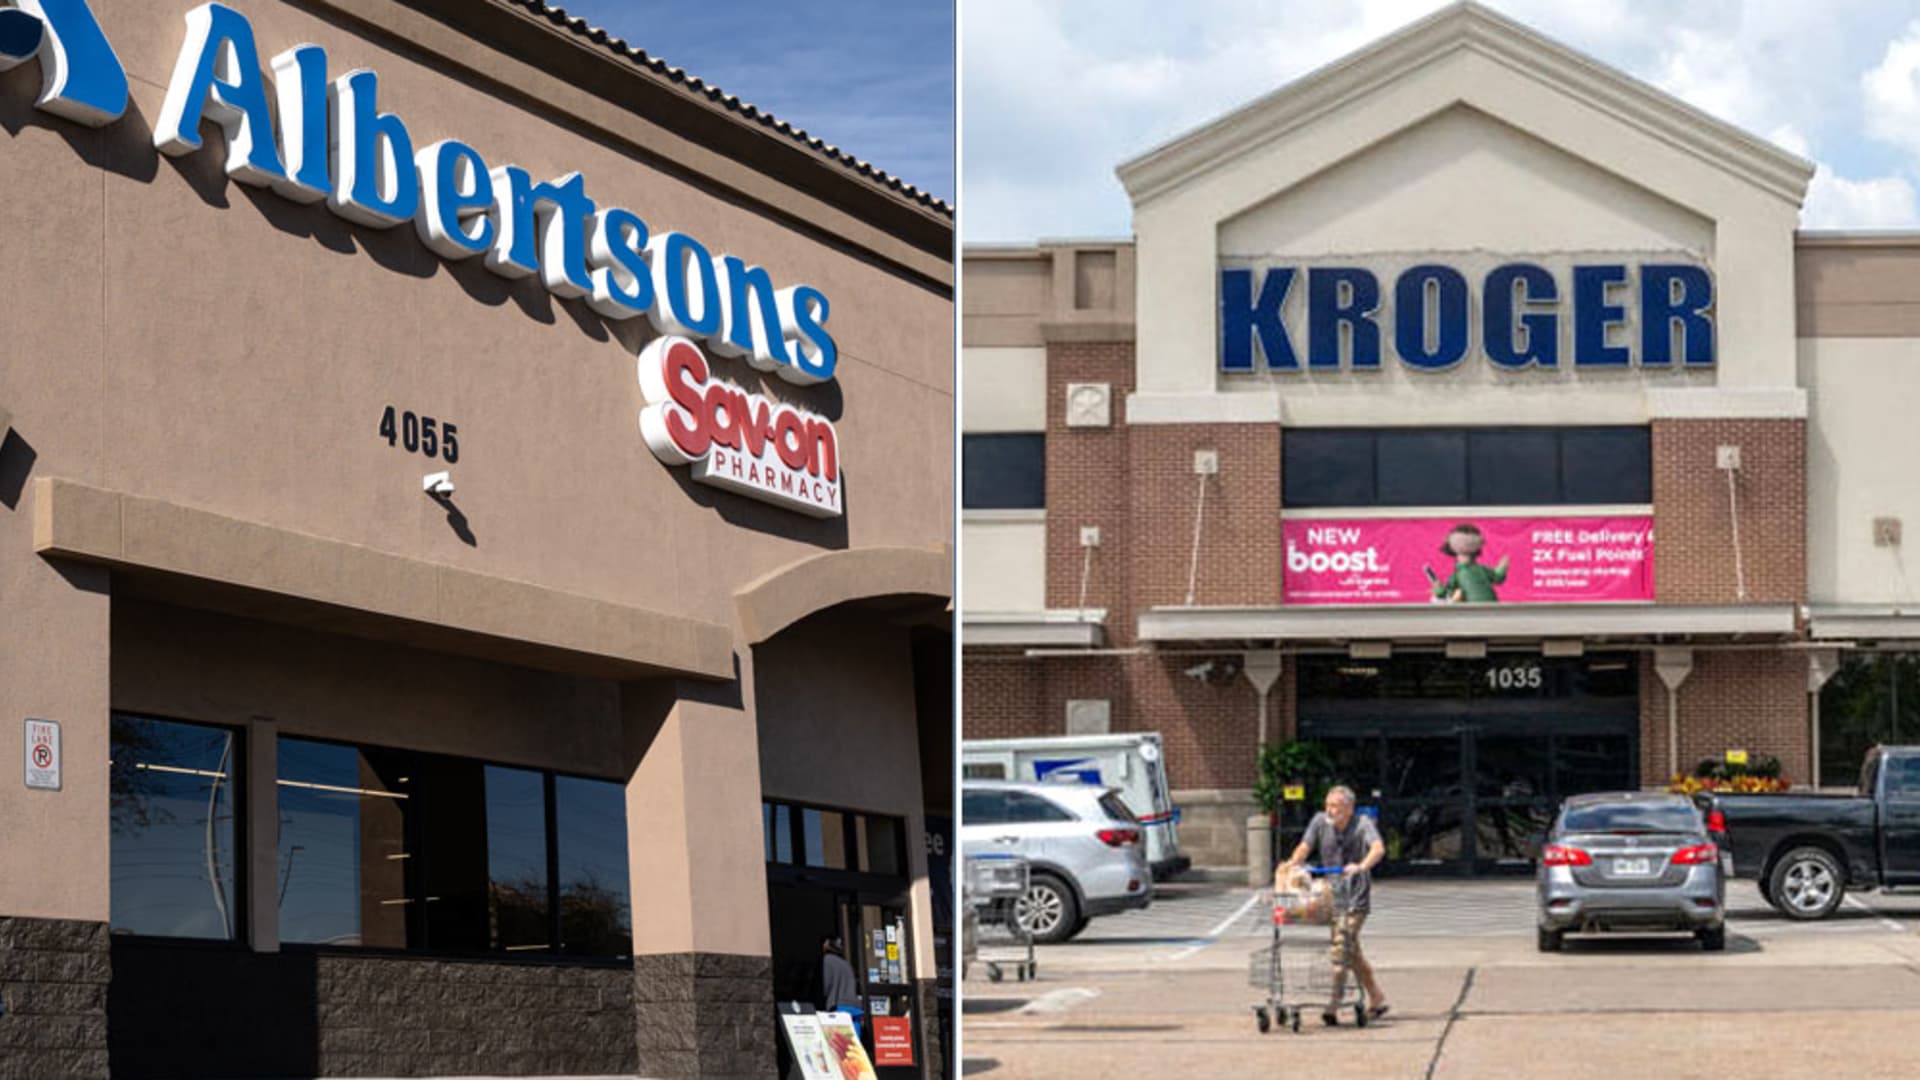 Kroger agrees to buy Albertsons for $24.6 billion